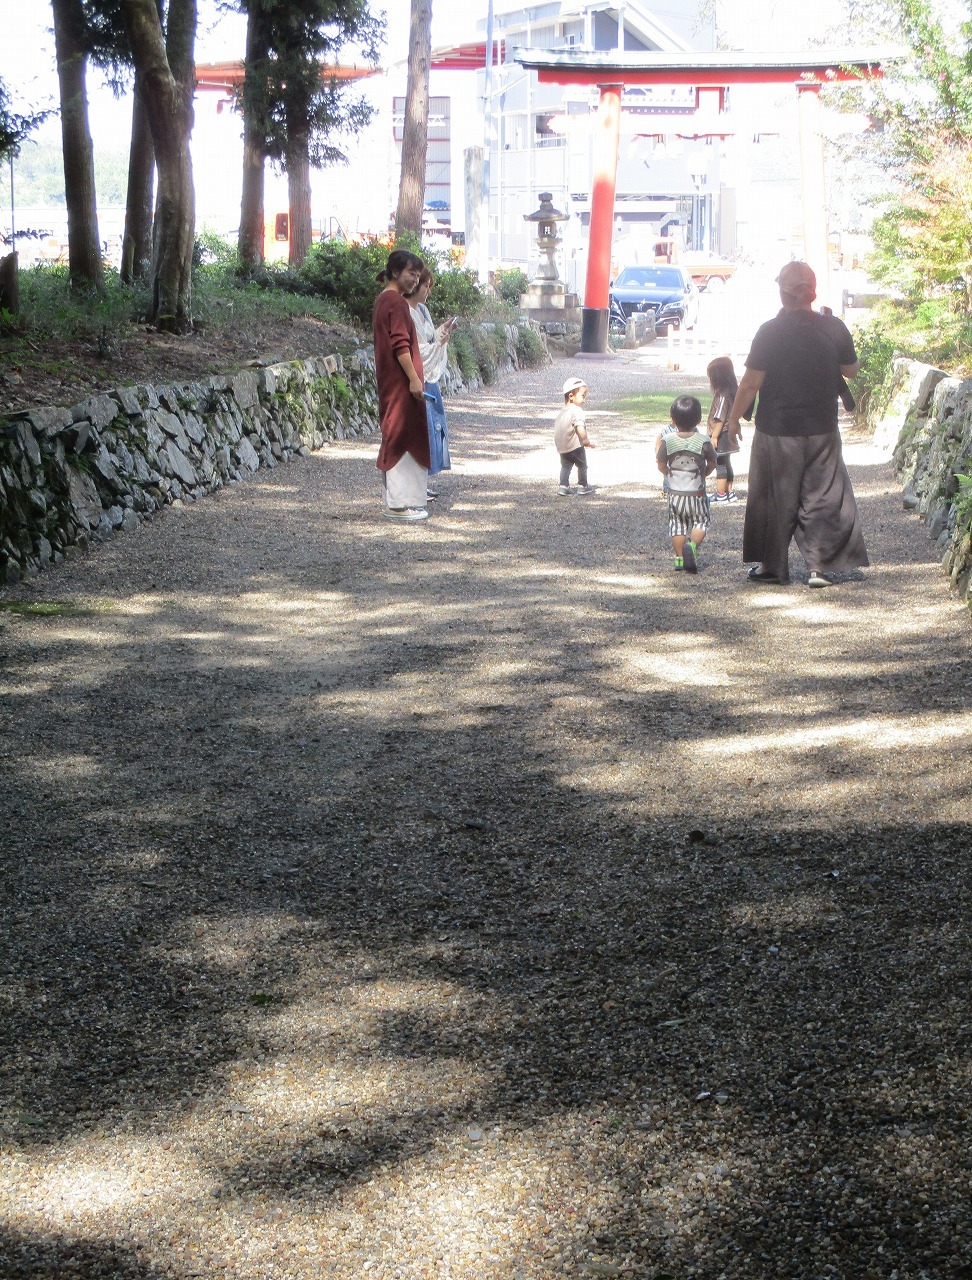 神社の参道で子どもたちがかけっこしている様子の写真